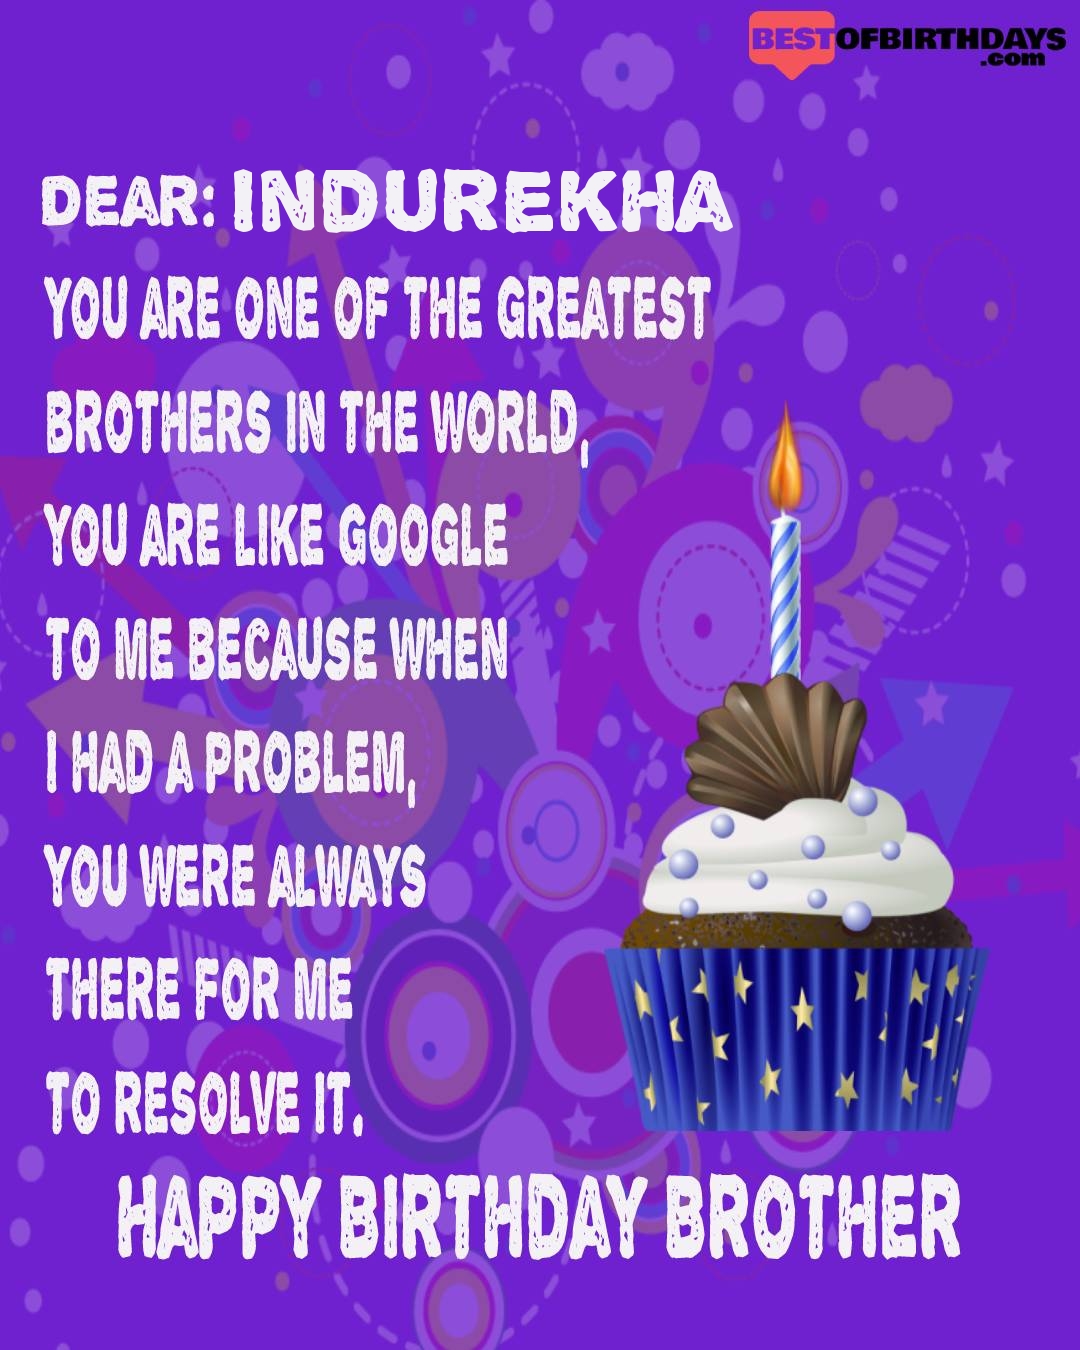 Happy birthday indurekha bhai brother bro